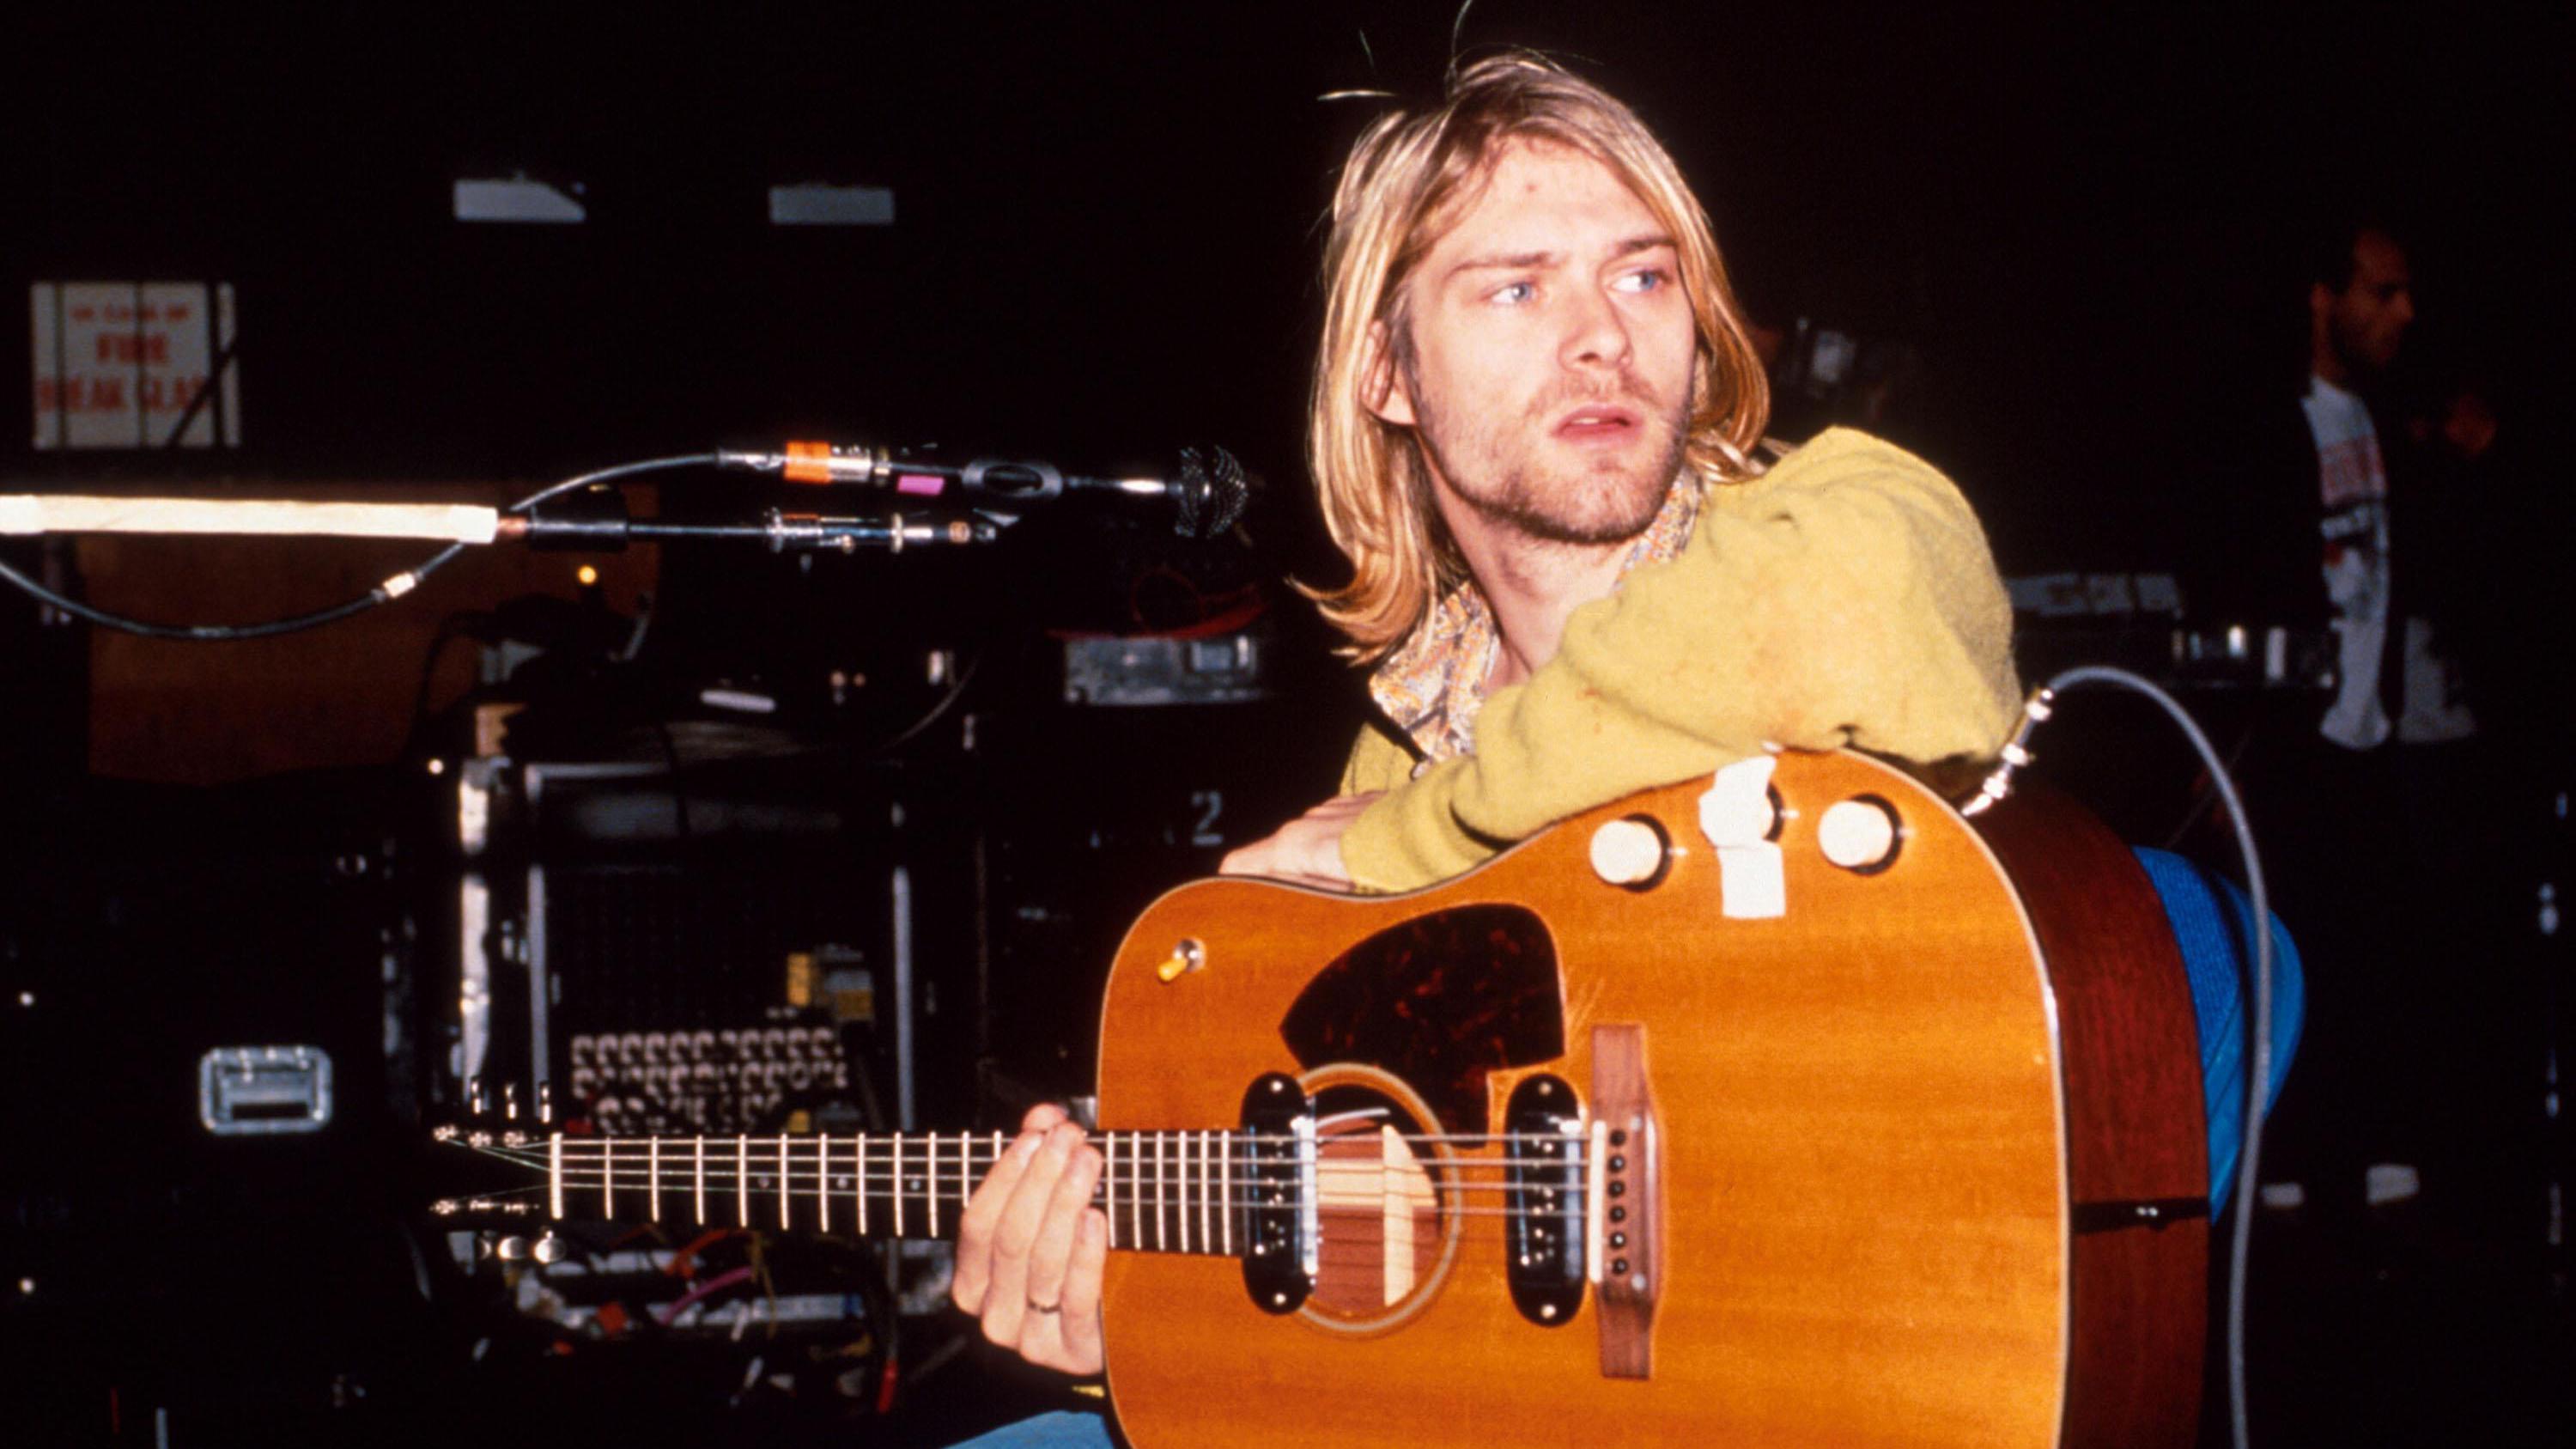 Super goed mozaïek jeans Gitaar Kurt Cobain voor 5,3 miljoen euro verkocht | Entertainment |  Telegraaf.nl